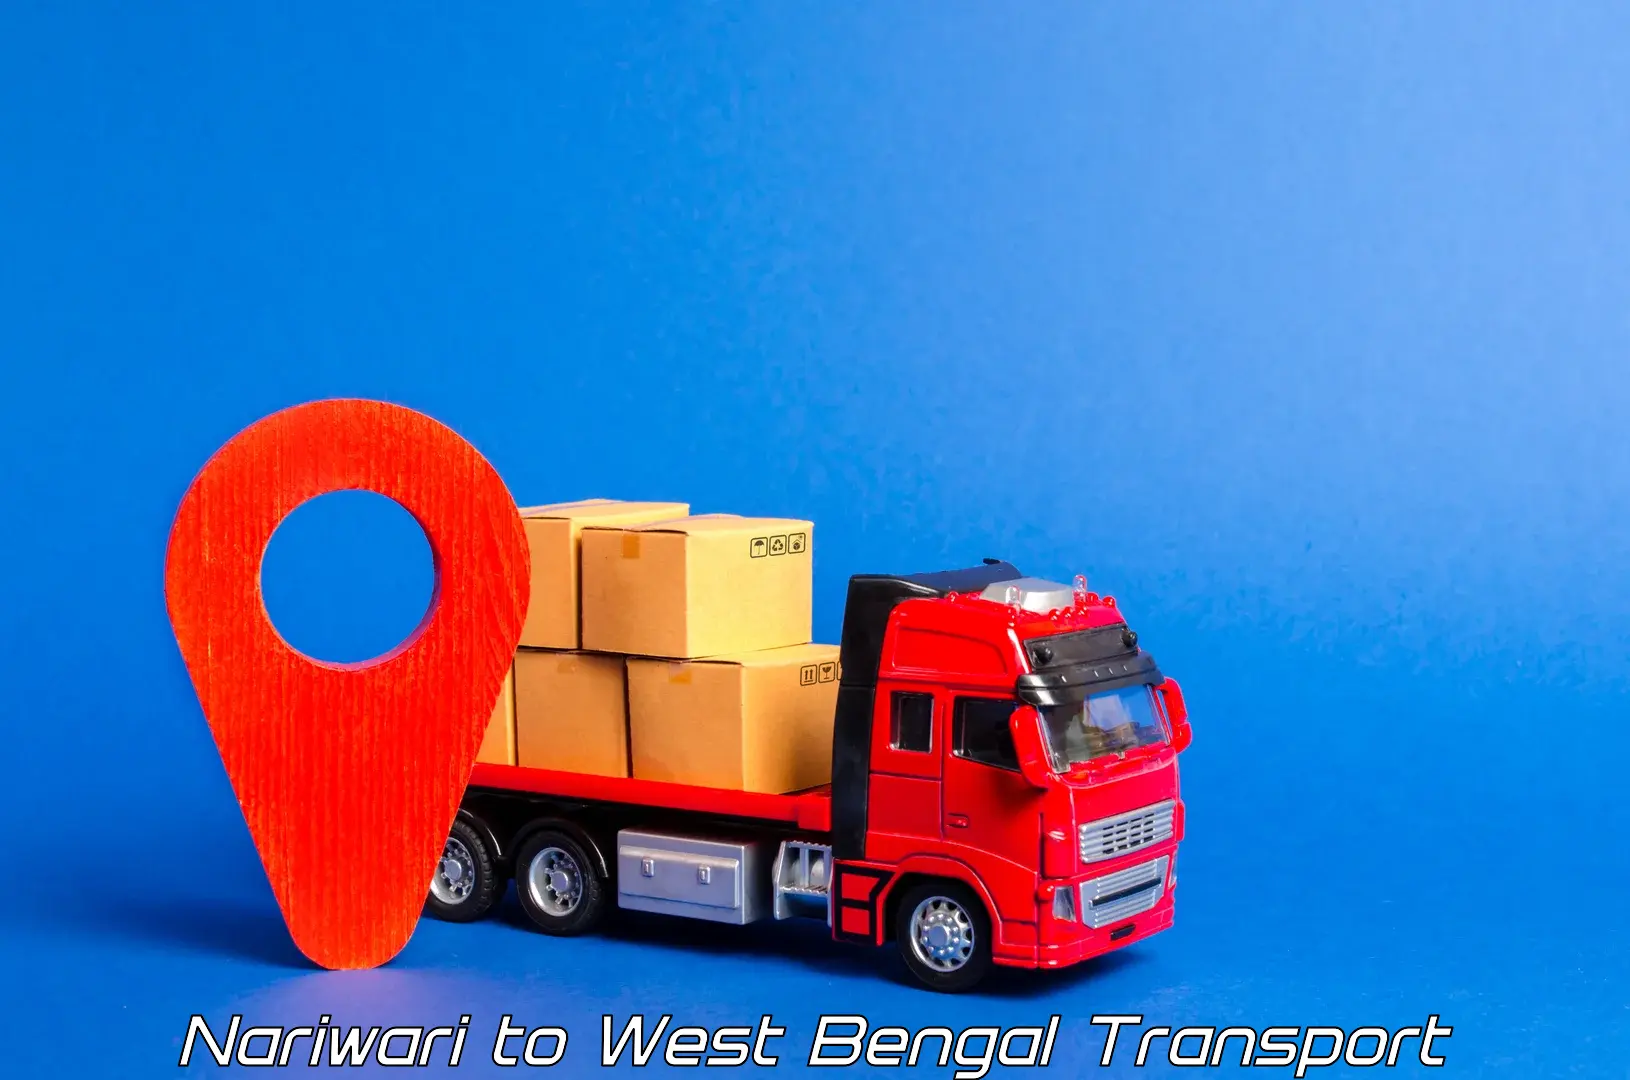 Truck transport companies in India Nariwari to Algarah